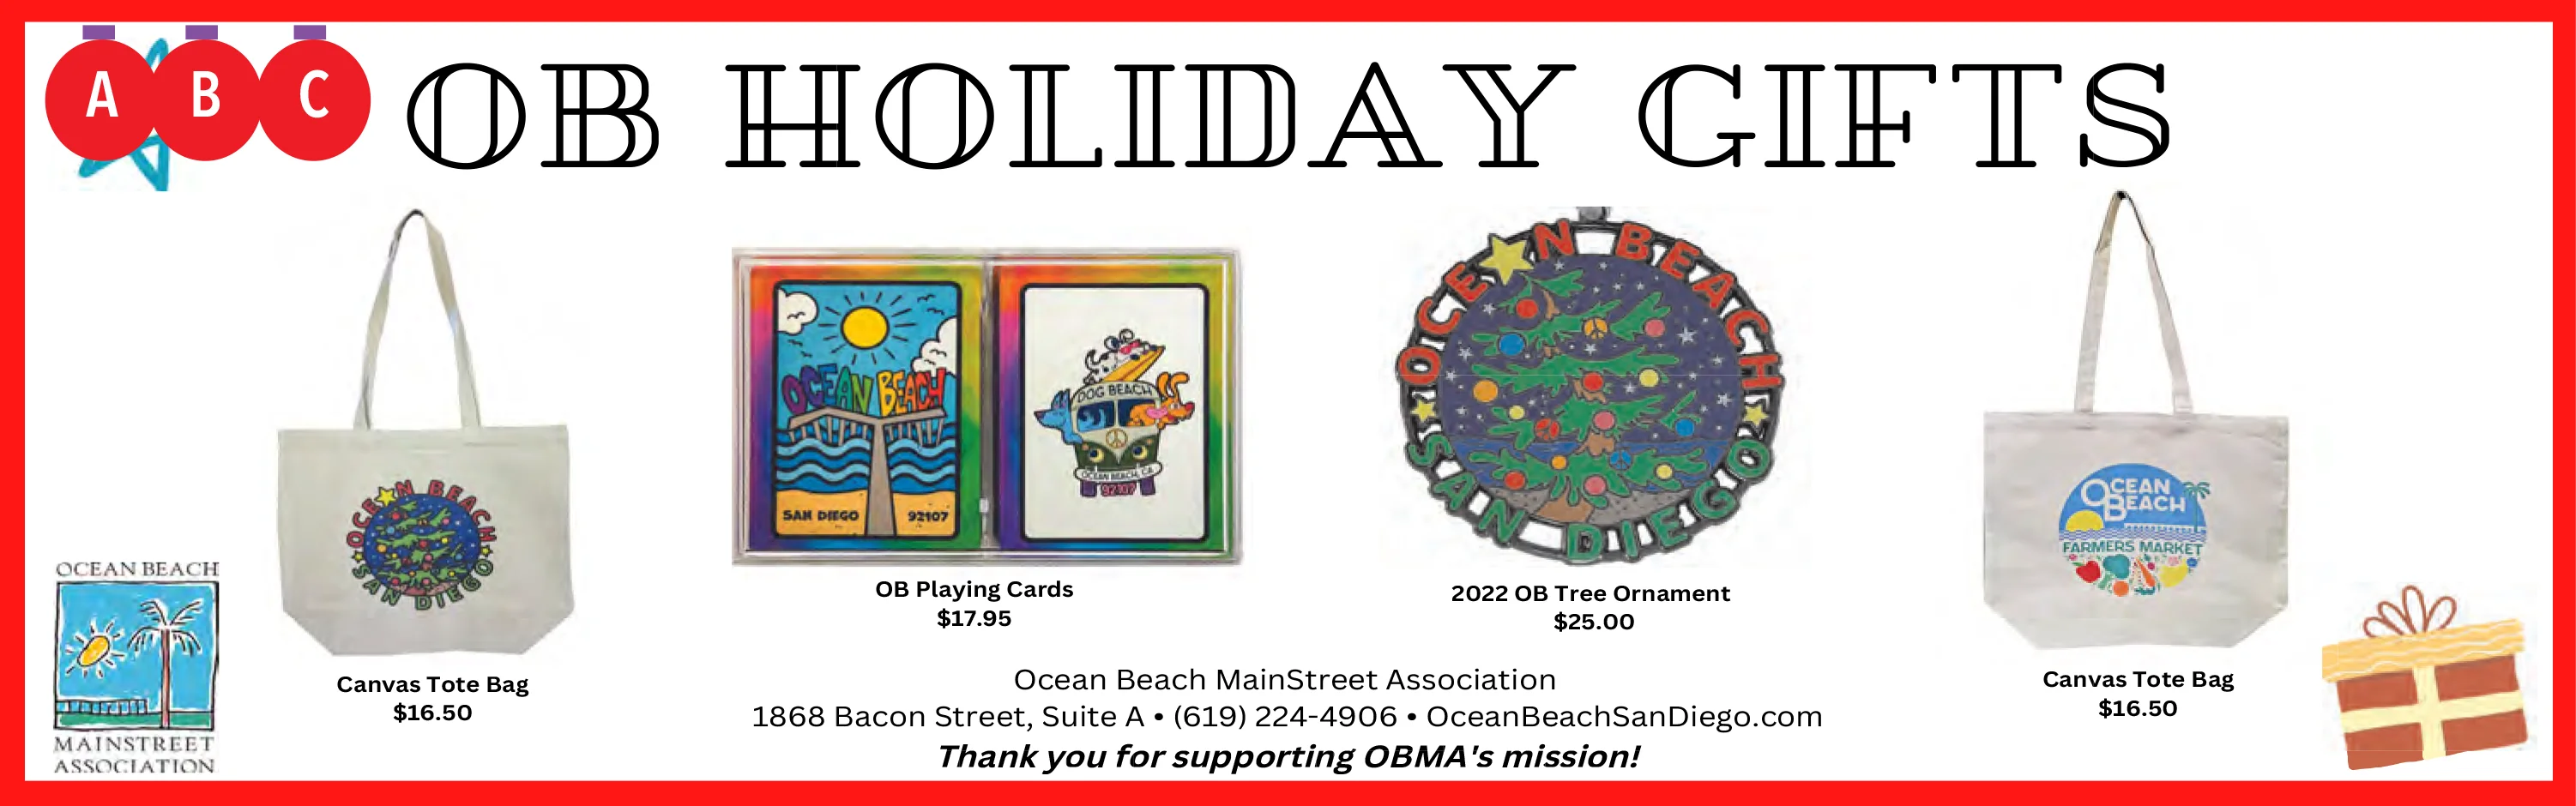 Ocean Beach MainStreet Association Holiday gifts 2022